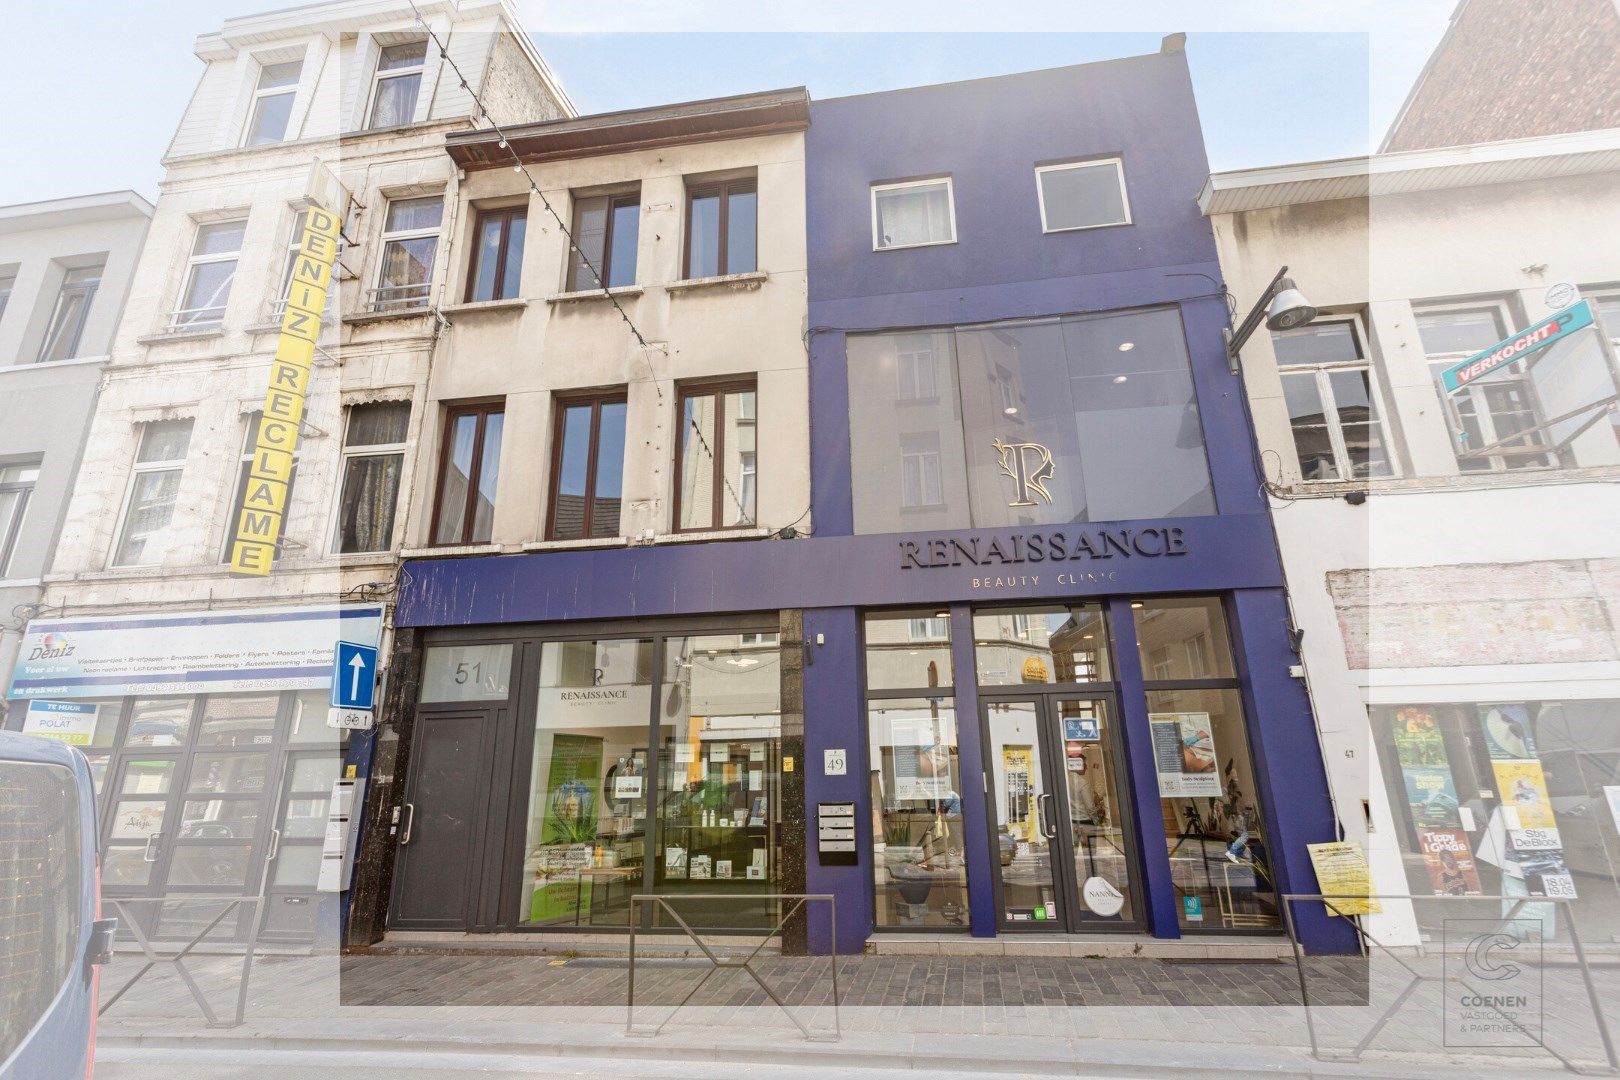 Commerciële ruimte te huur Driekoningenstraat 49 - 51 - 2600 Antwerpen